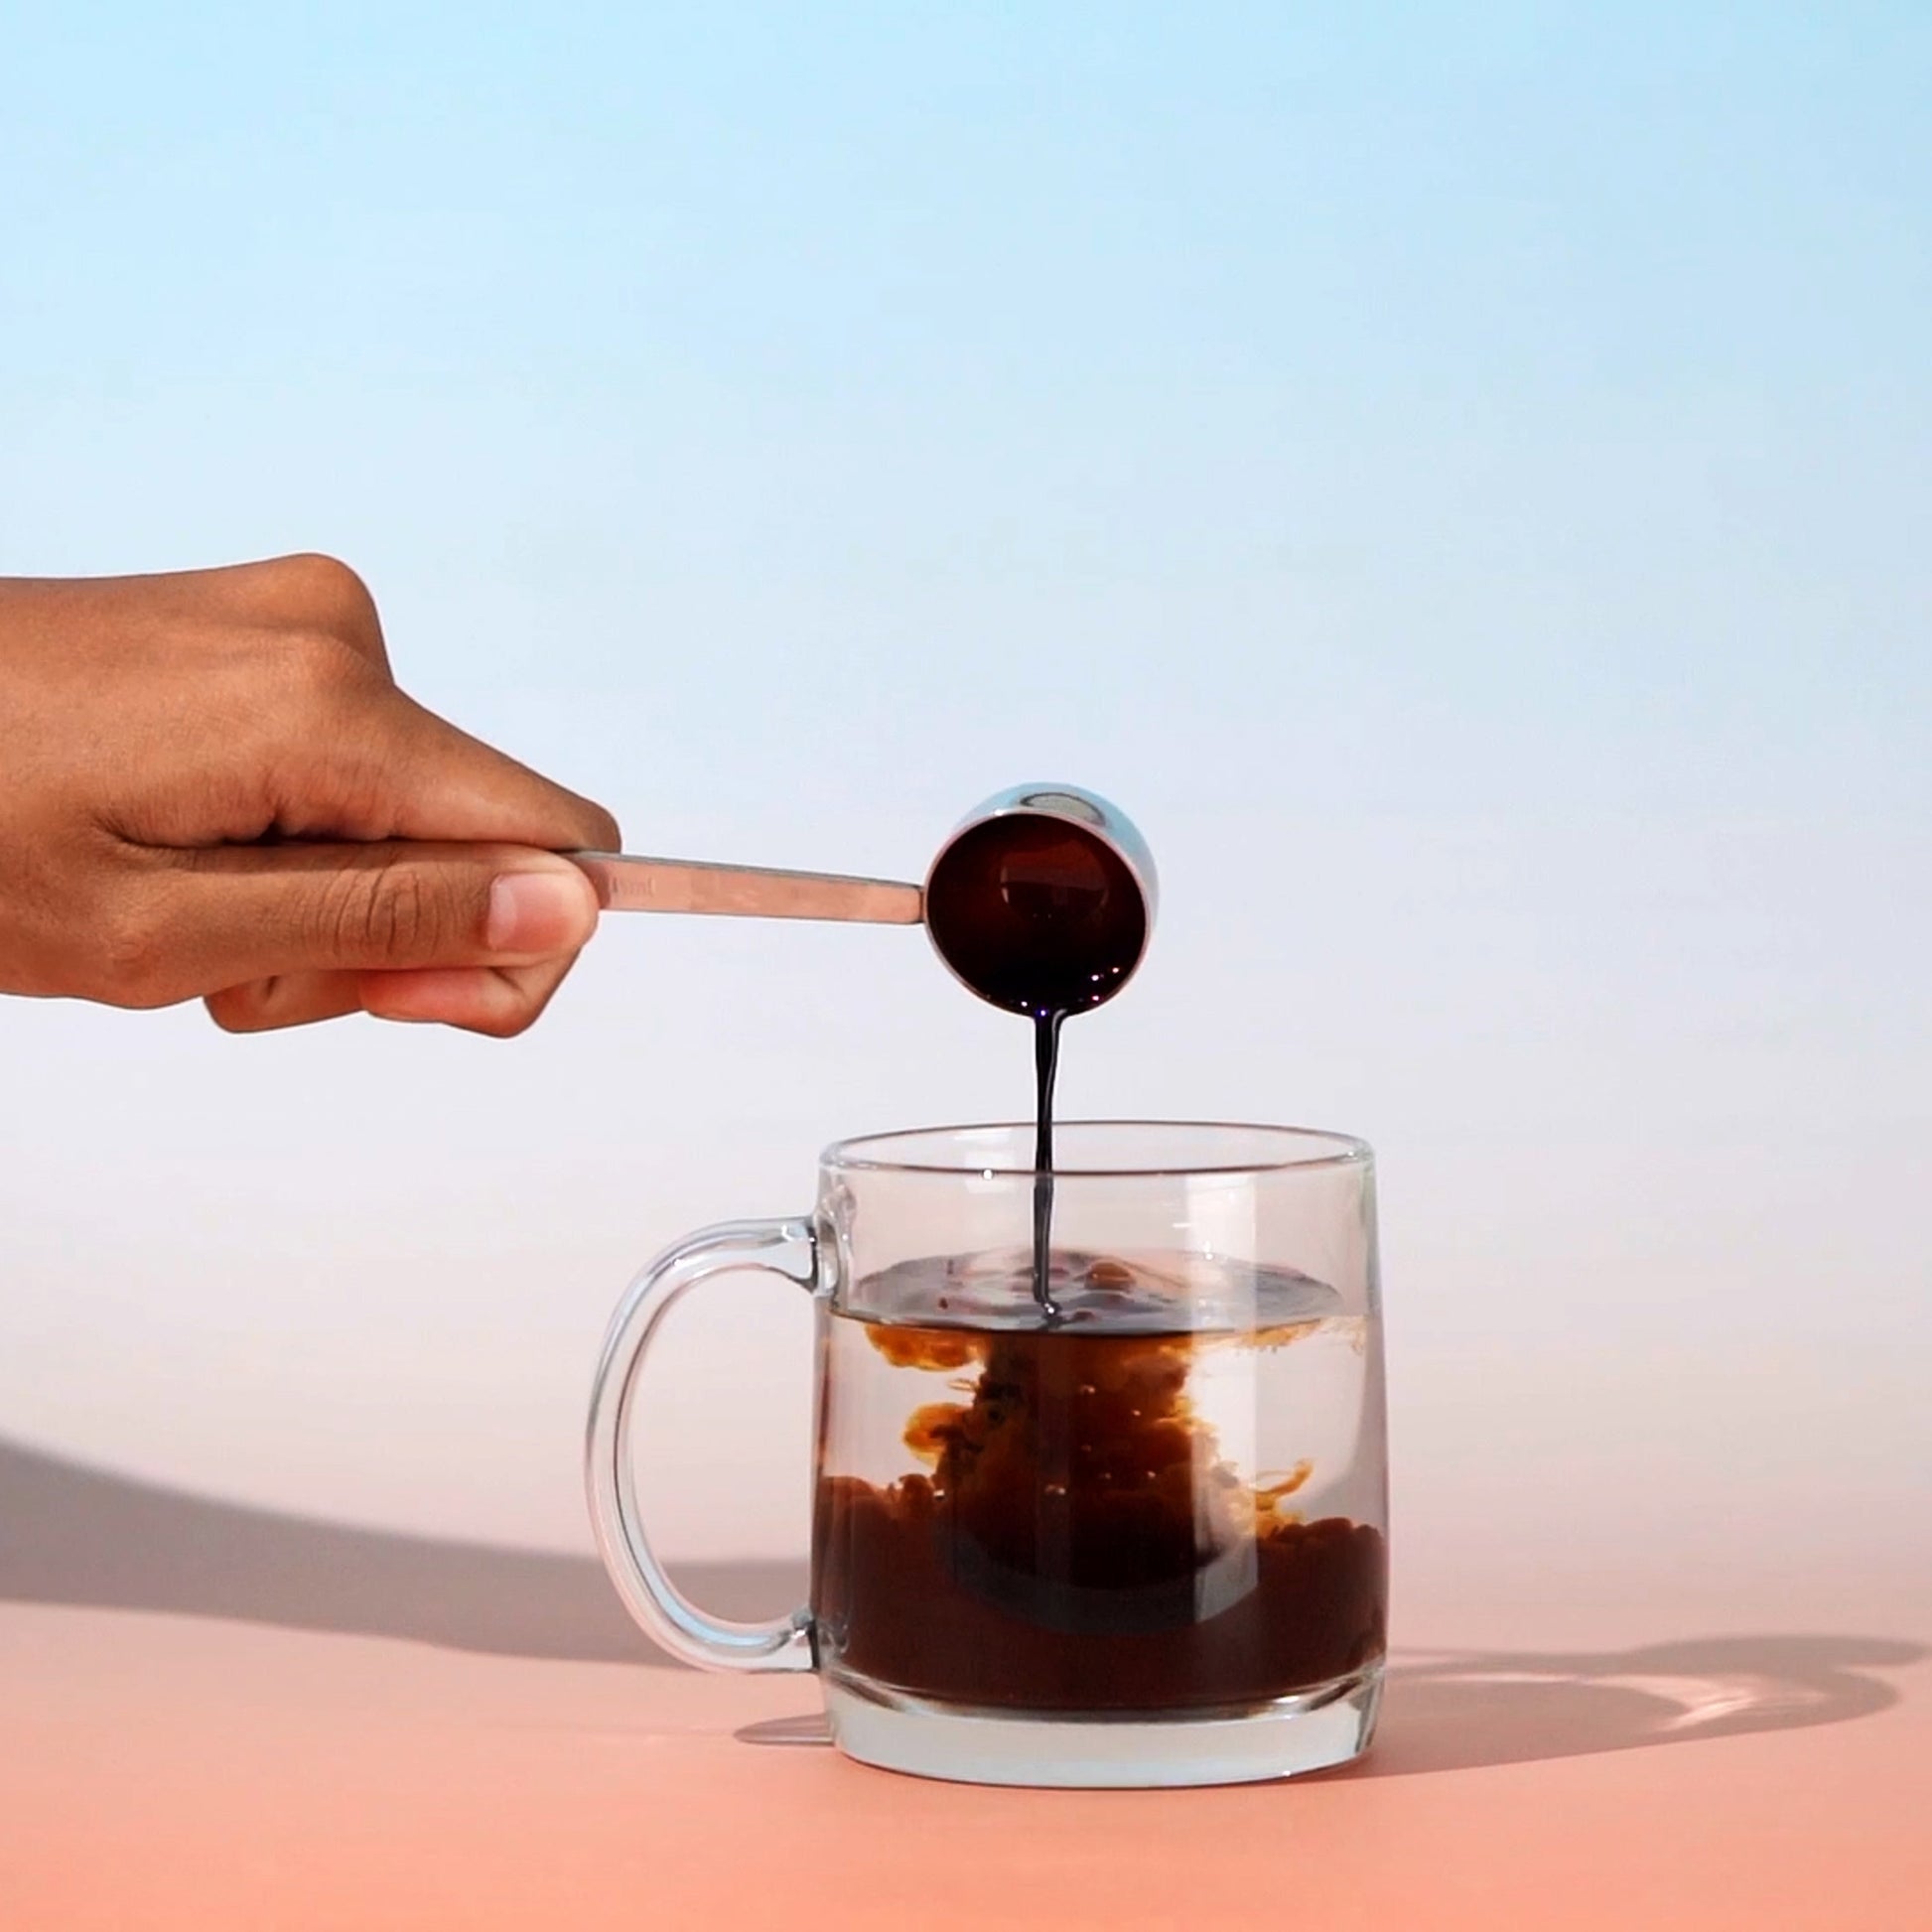 Loa Kaffeekonzentrat Kaffee in 10 Sekunden zuhause machen